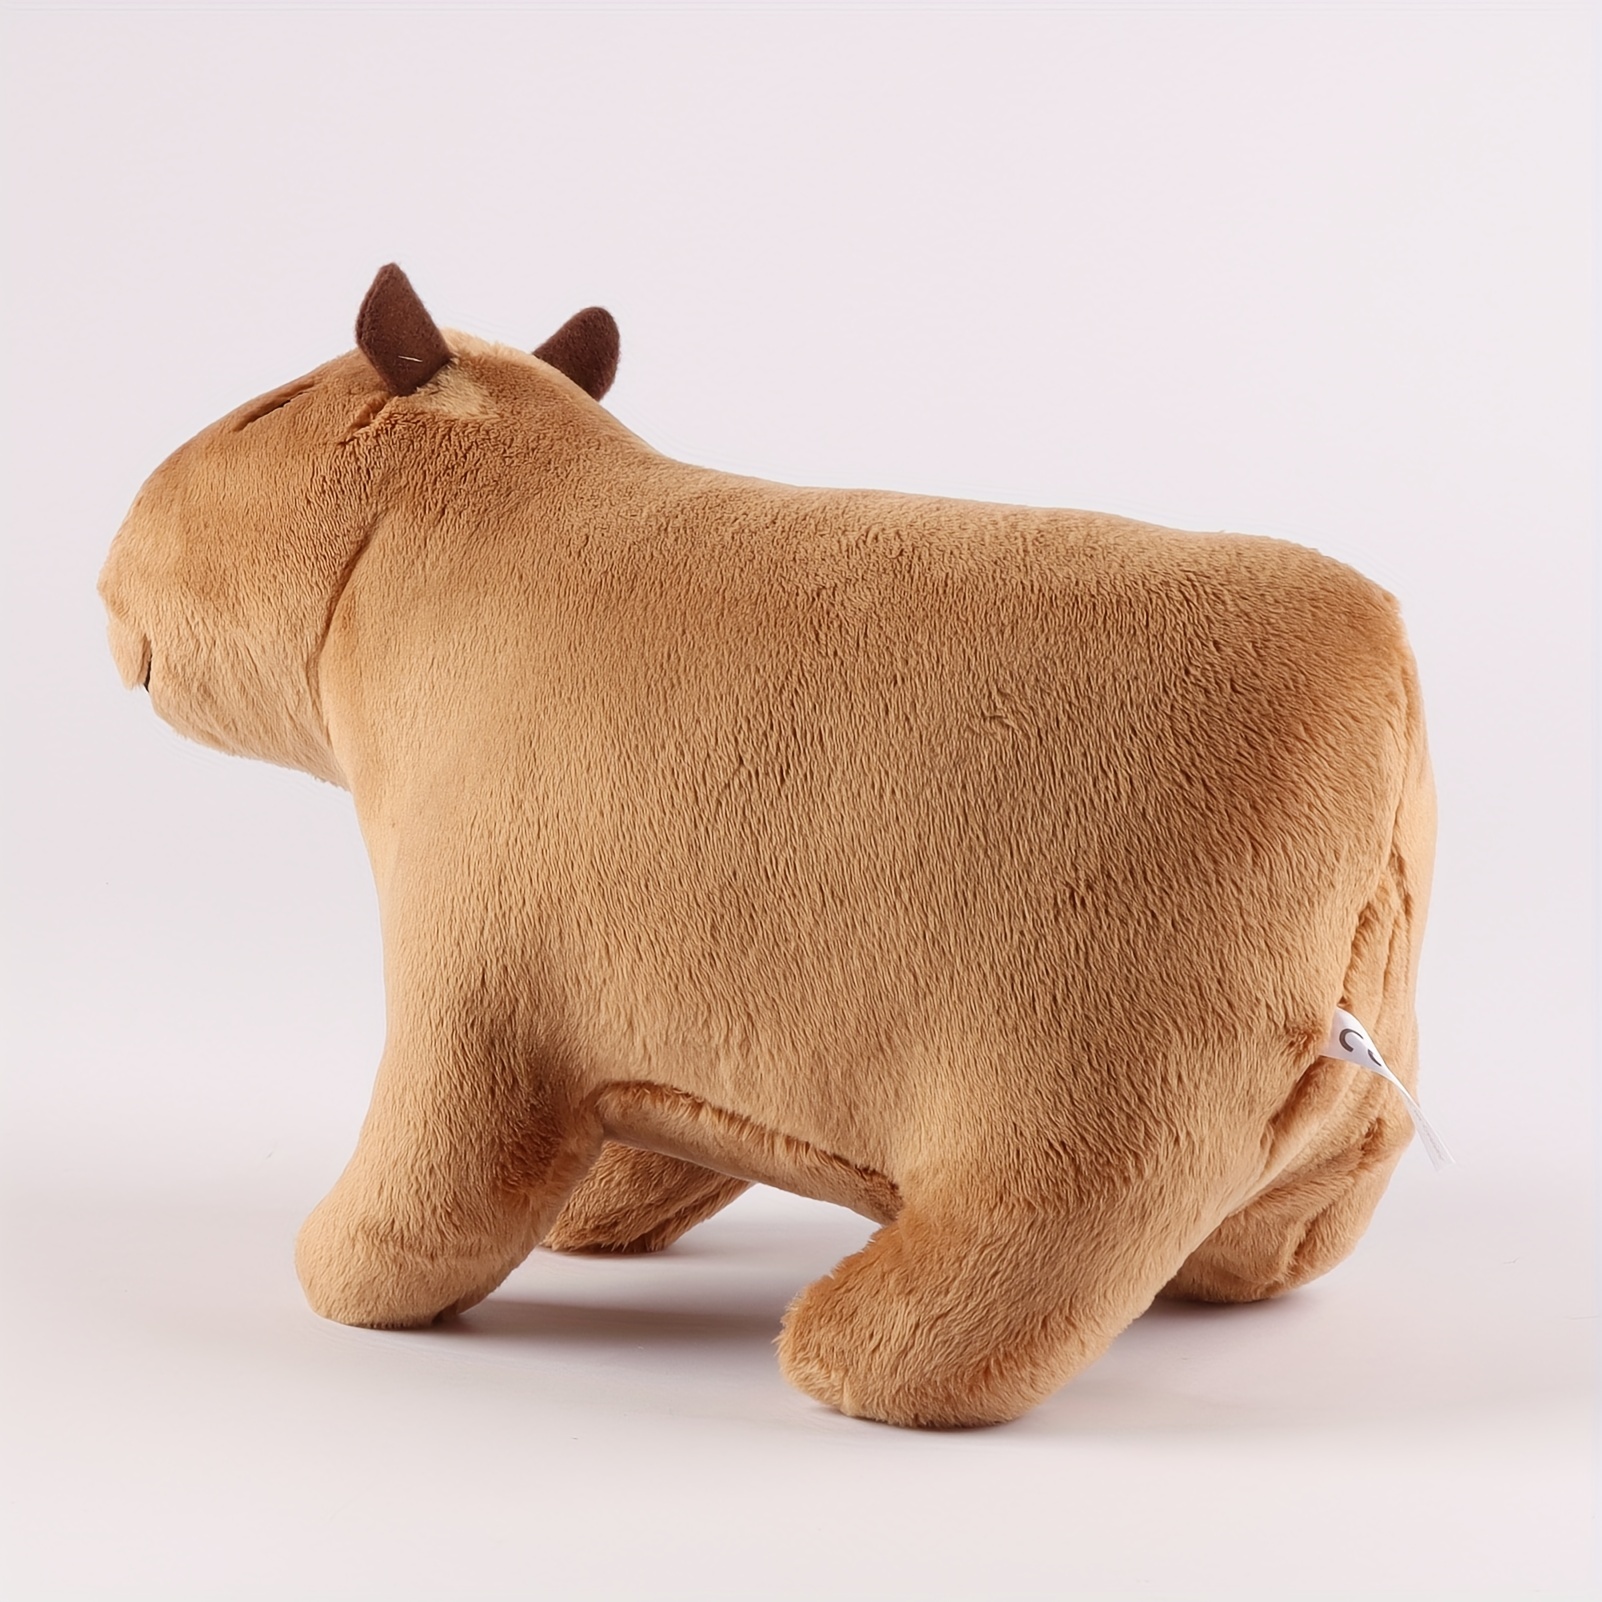 18cm Flauschigen Capybara Plüsch Puppe Kawaii Capybara Stofftier